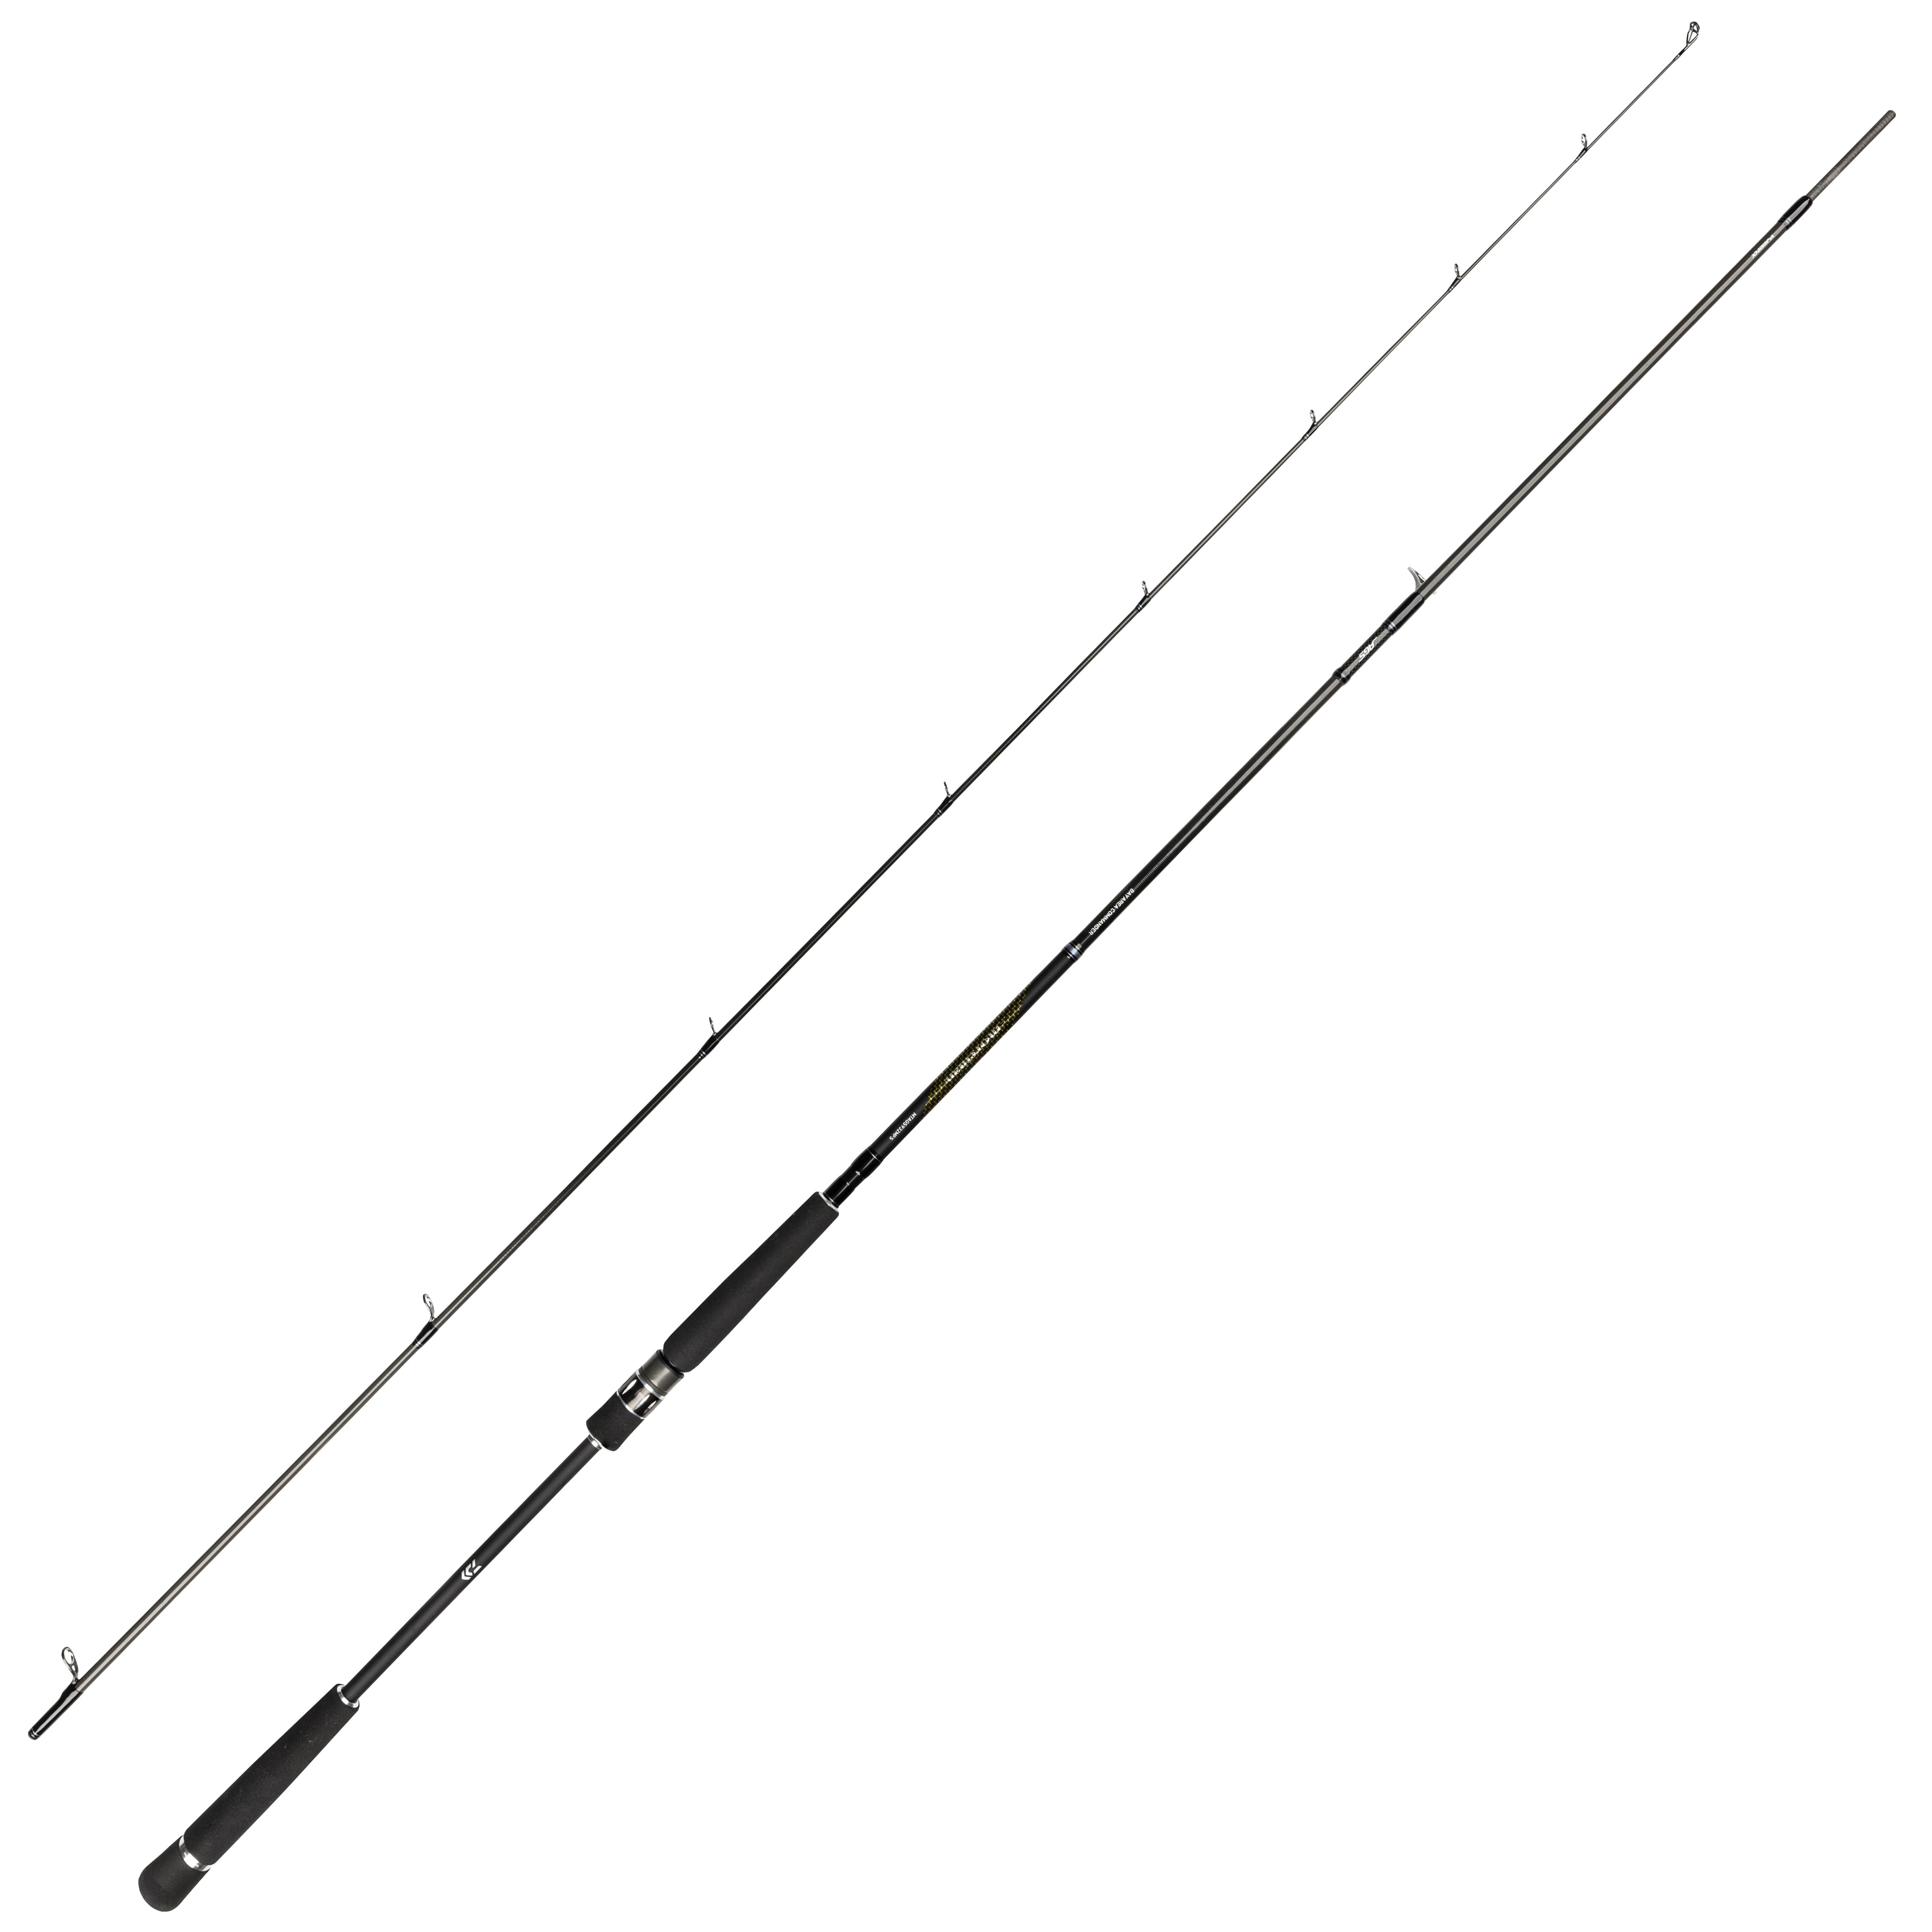 Daiwa - Morethan Mobile, Spinning, Fishing Rods